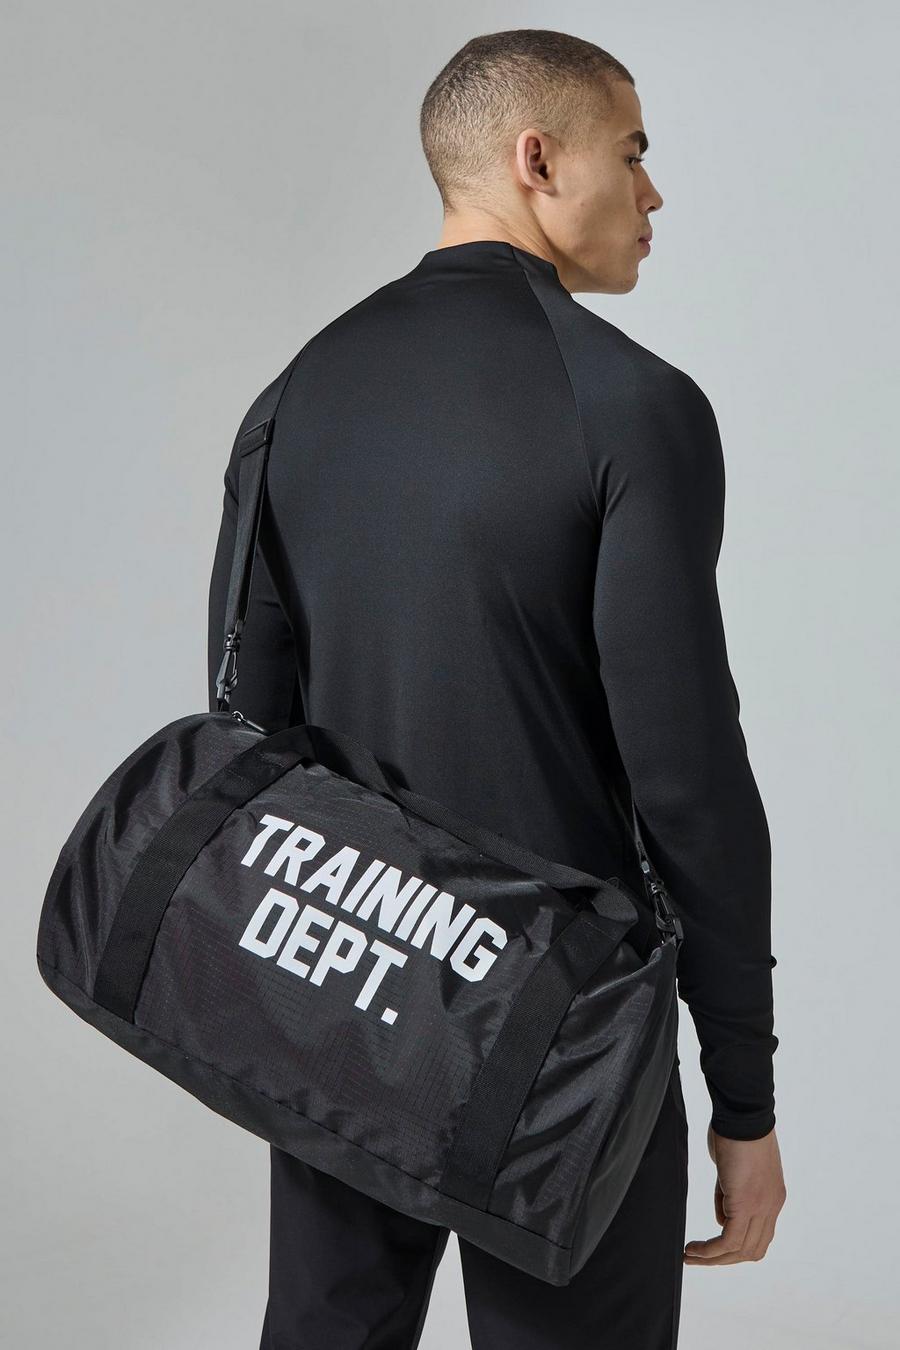 Black Active Training Dept Fitness Barrel Tas